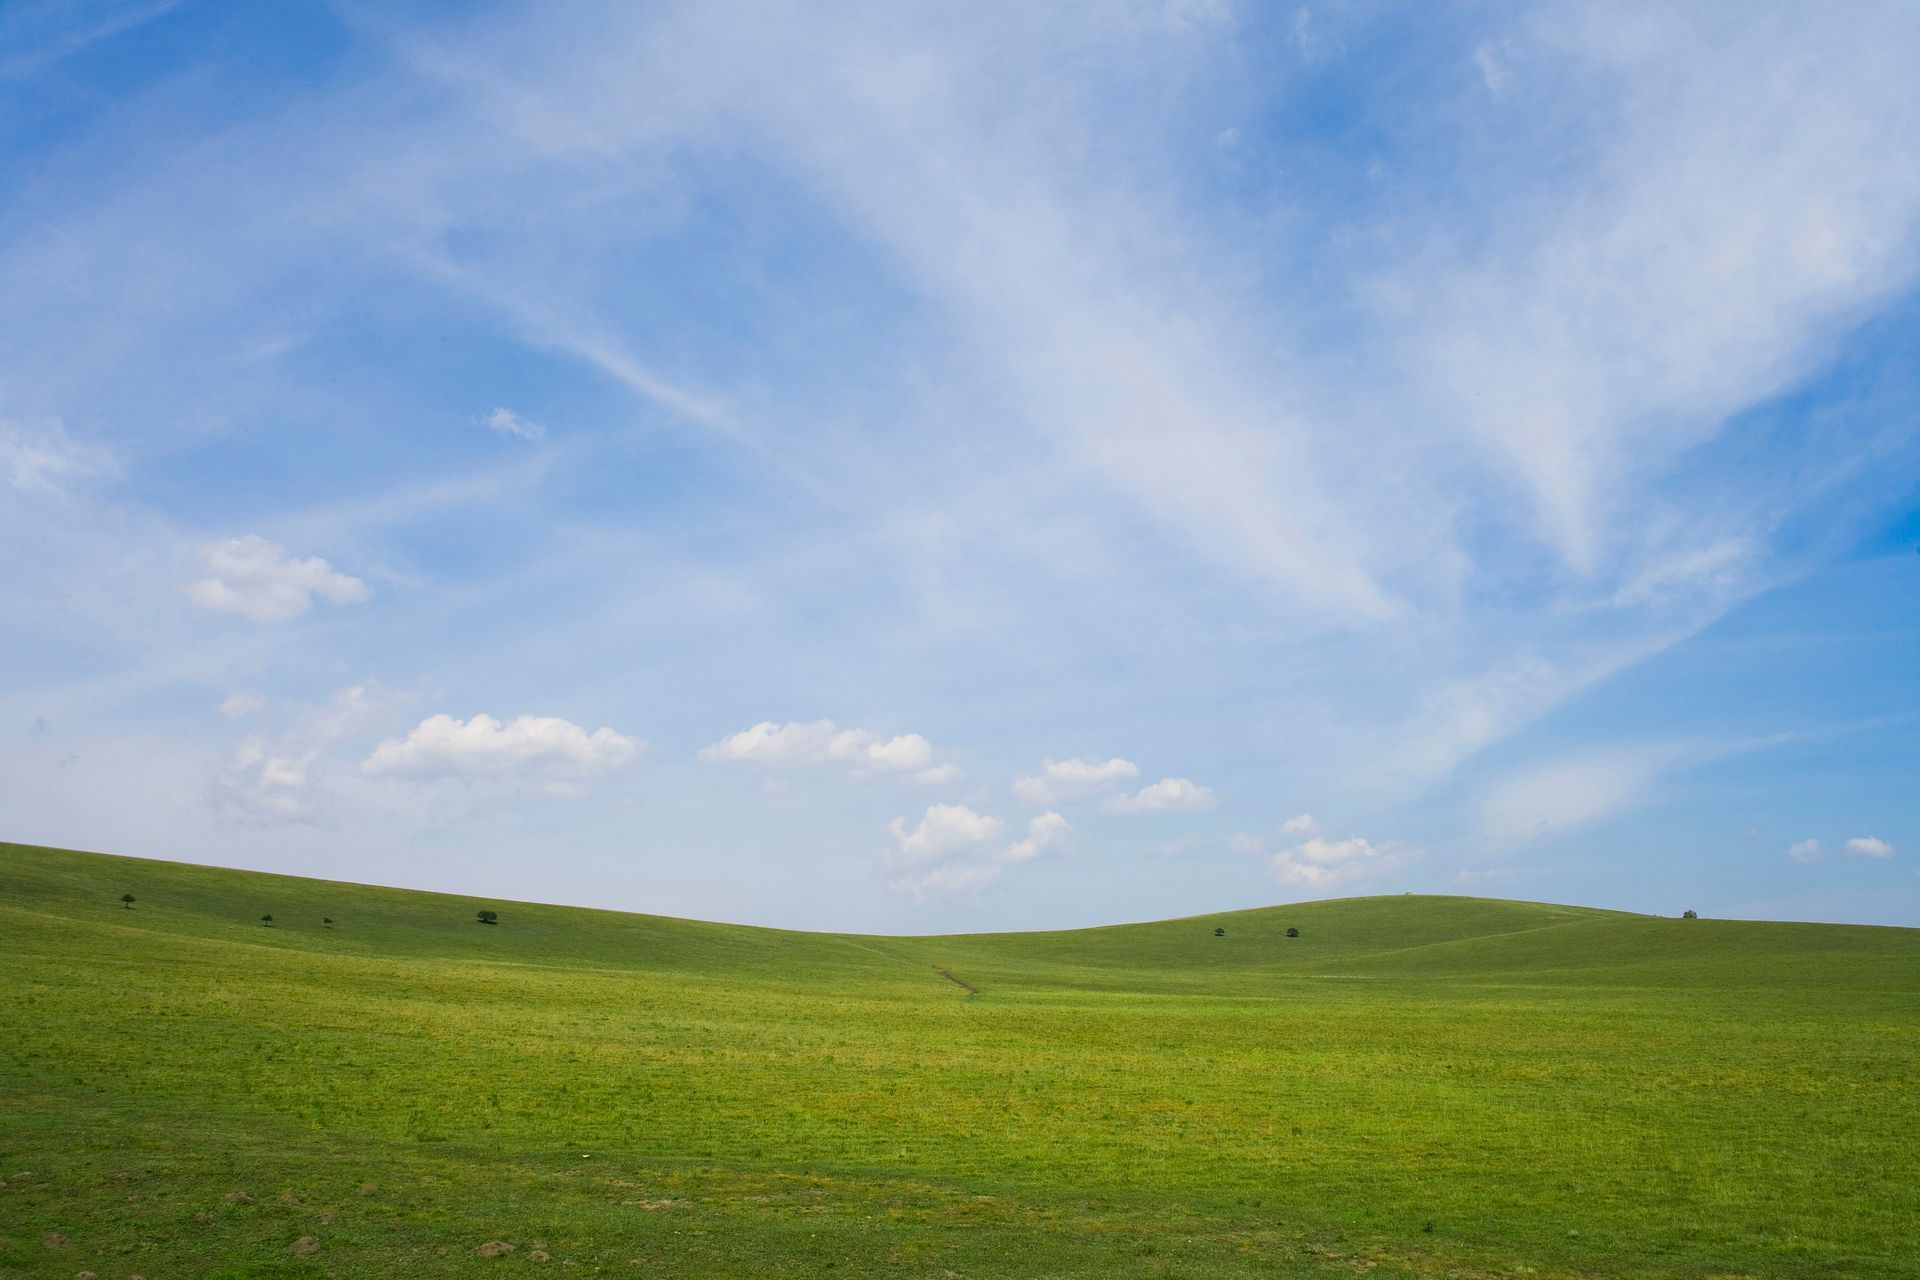 美丽的蓝天草原新疆4K风景壁纸-千叶网